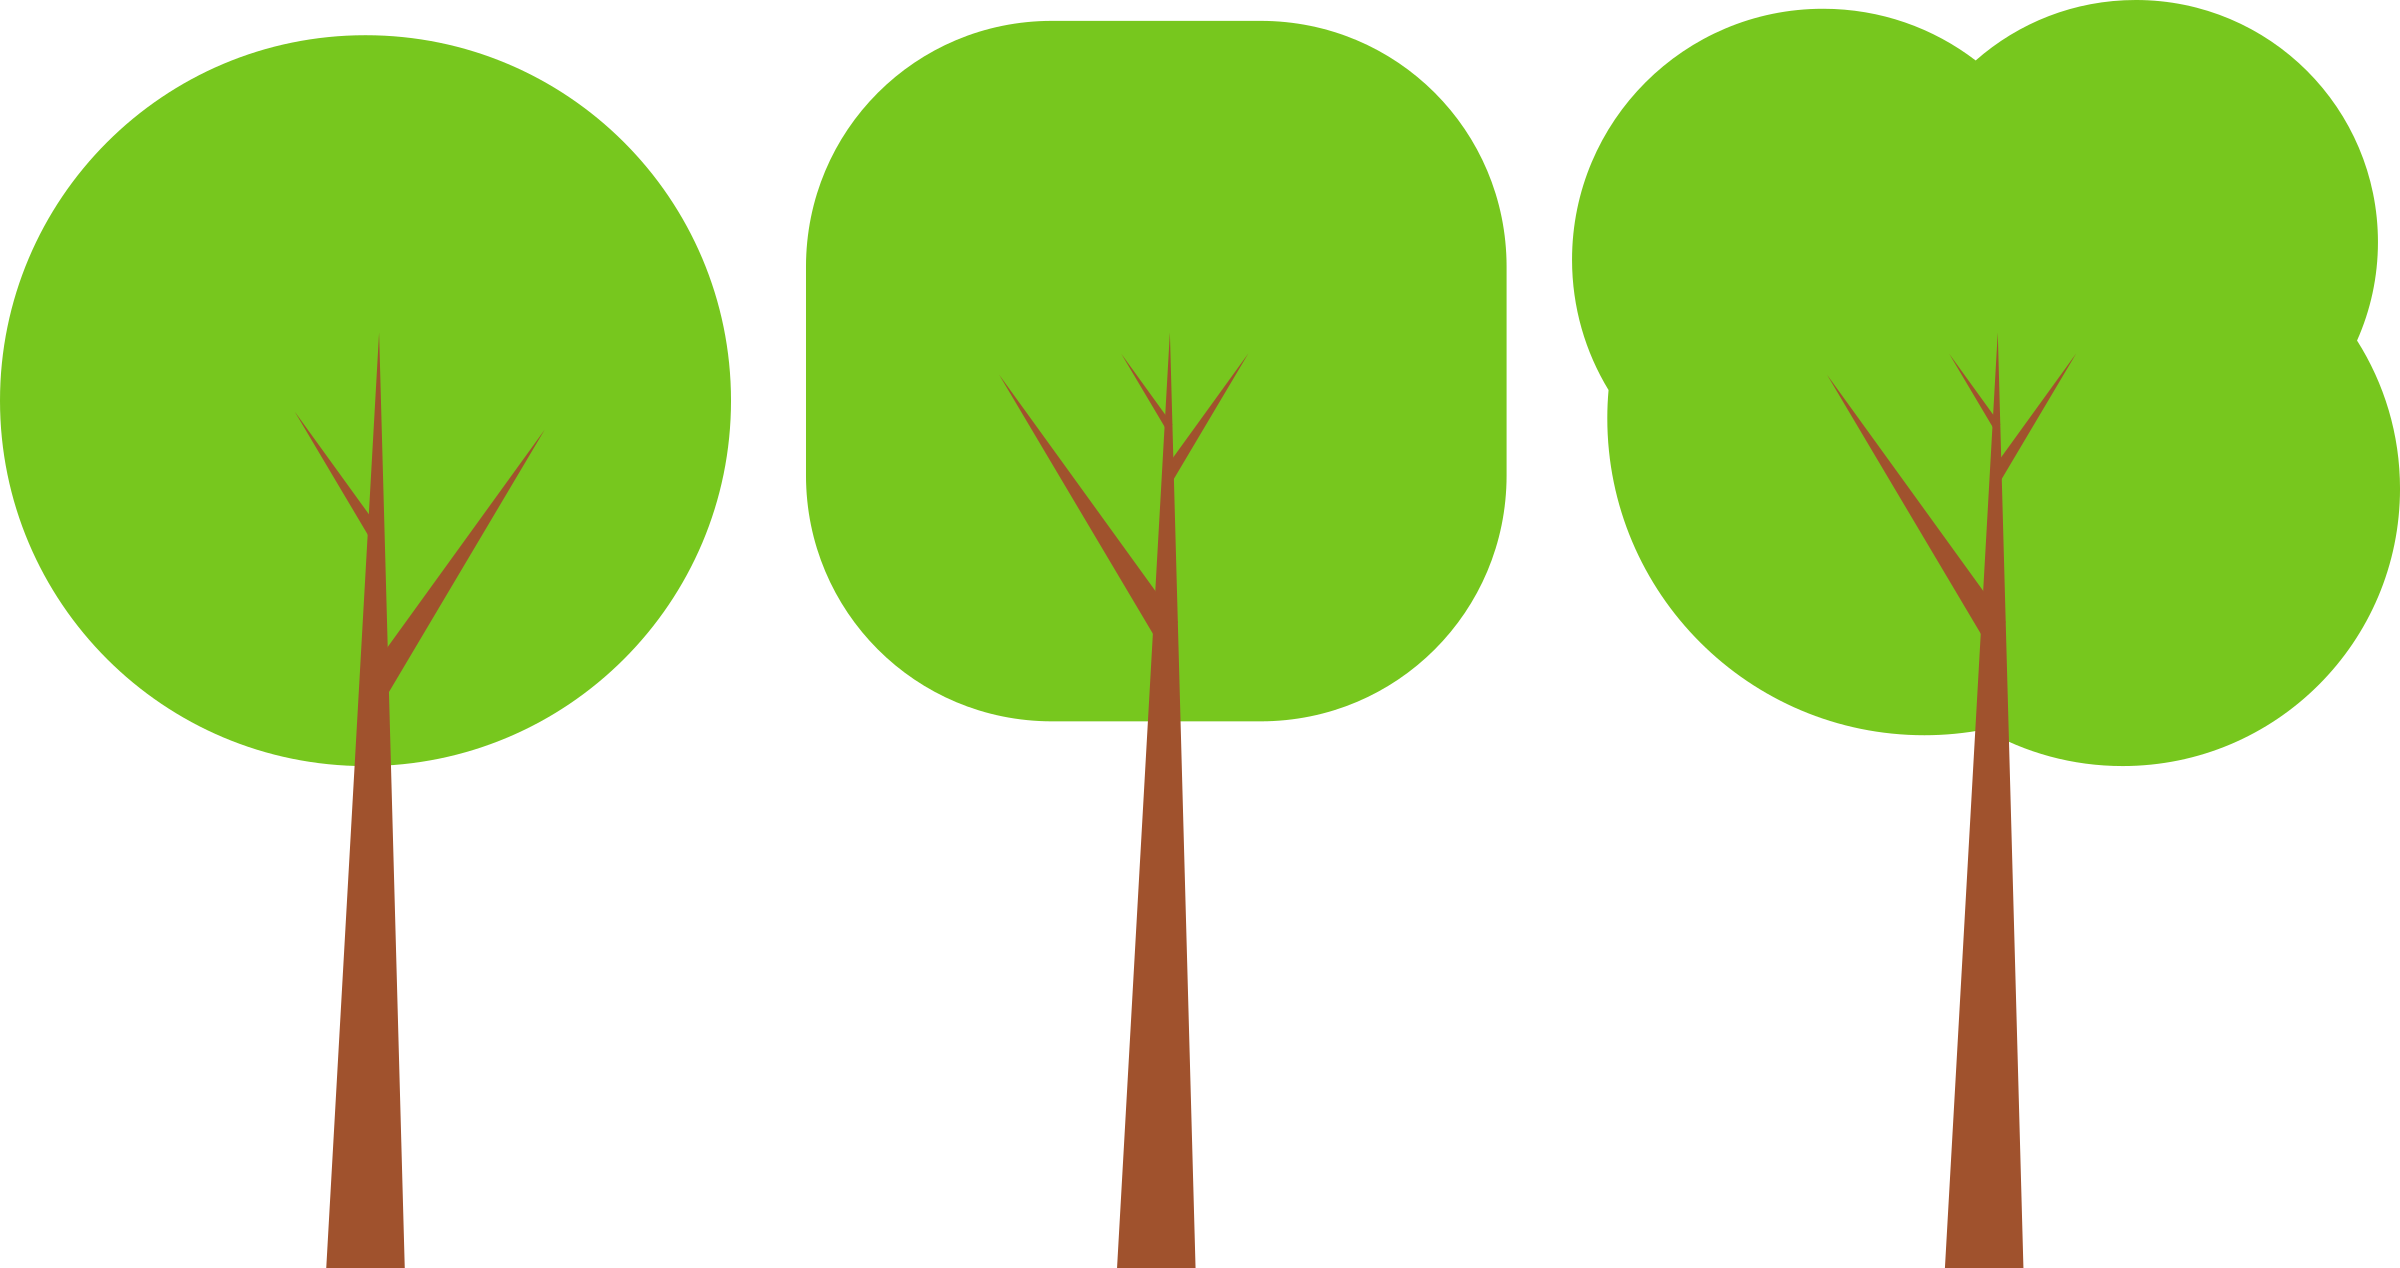 Tree - Cartoon Trees In A Row (2400x1268)